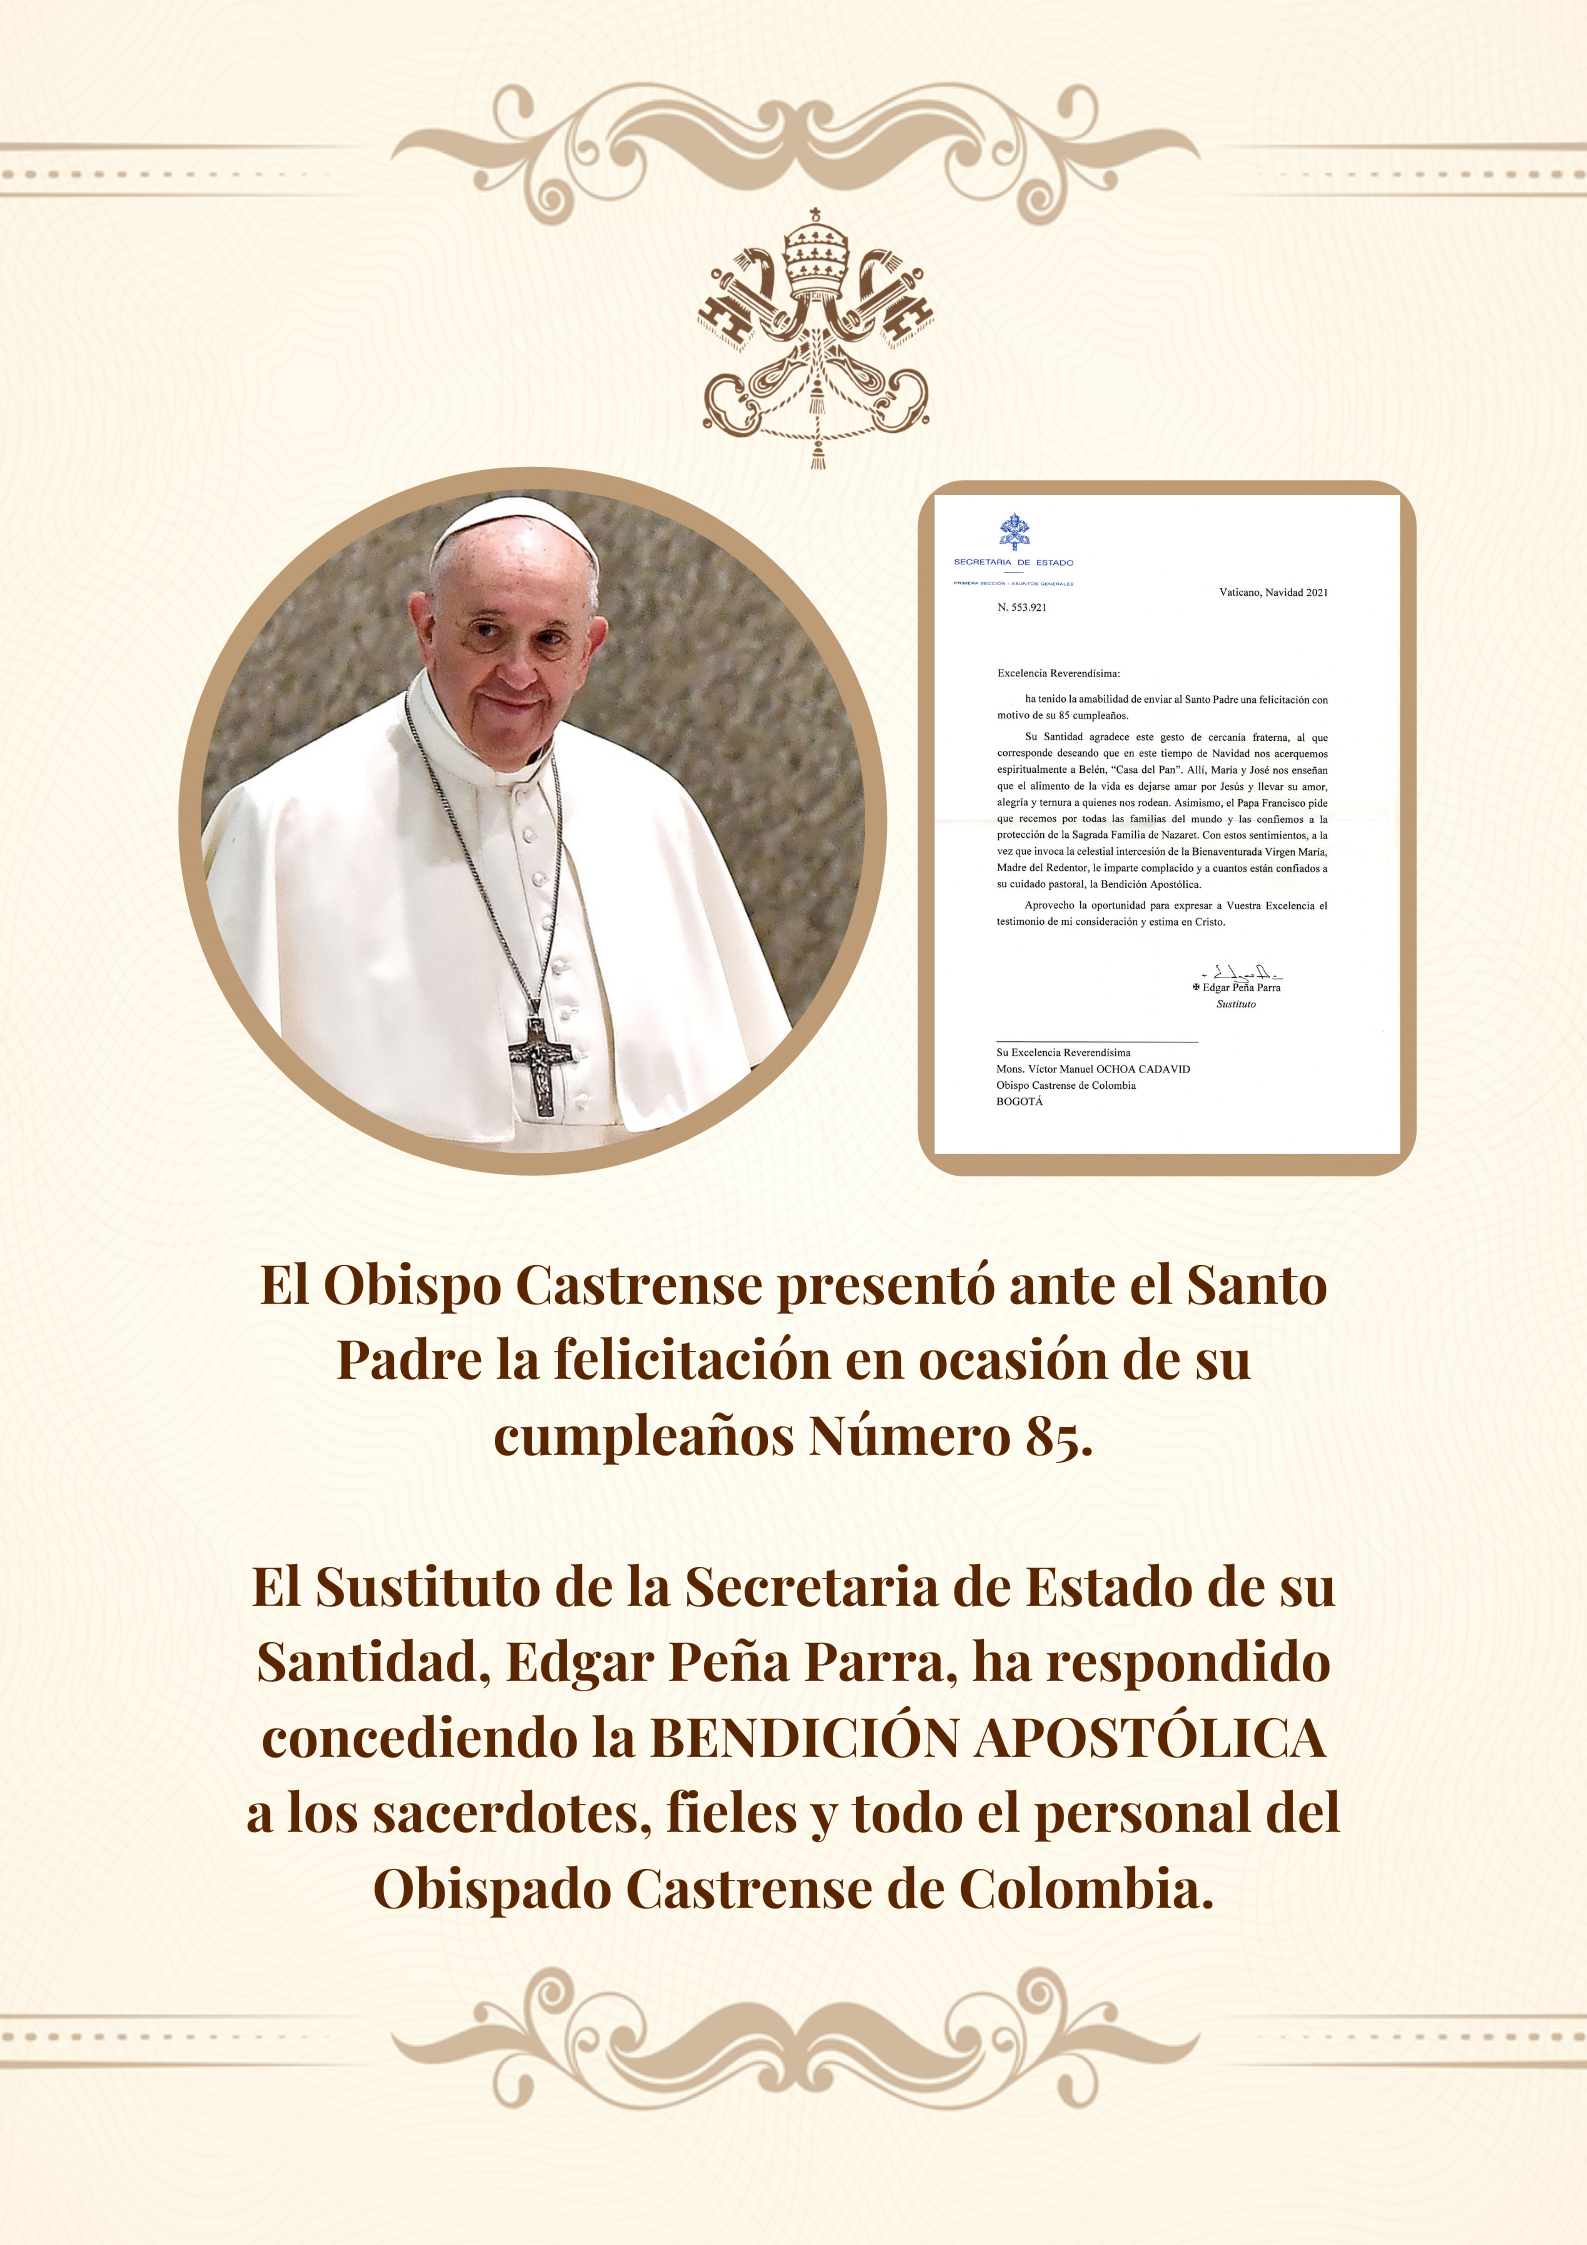 El Santo Papa Concedió La BENDICIÓN APOSTÓLICA A Los Sacerdotes, Fieles Y A Todo El Personal Del Obispado Castrense De Colombia